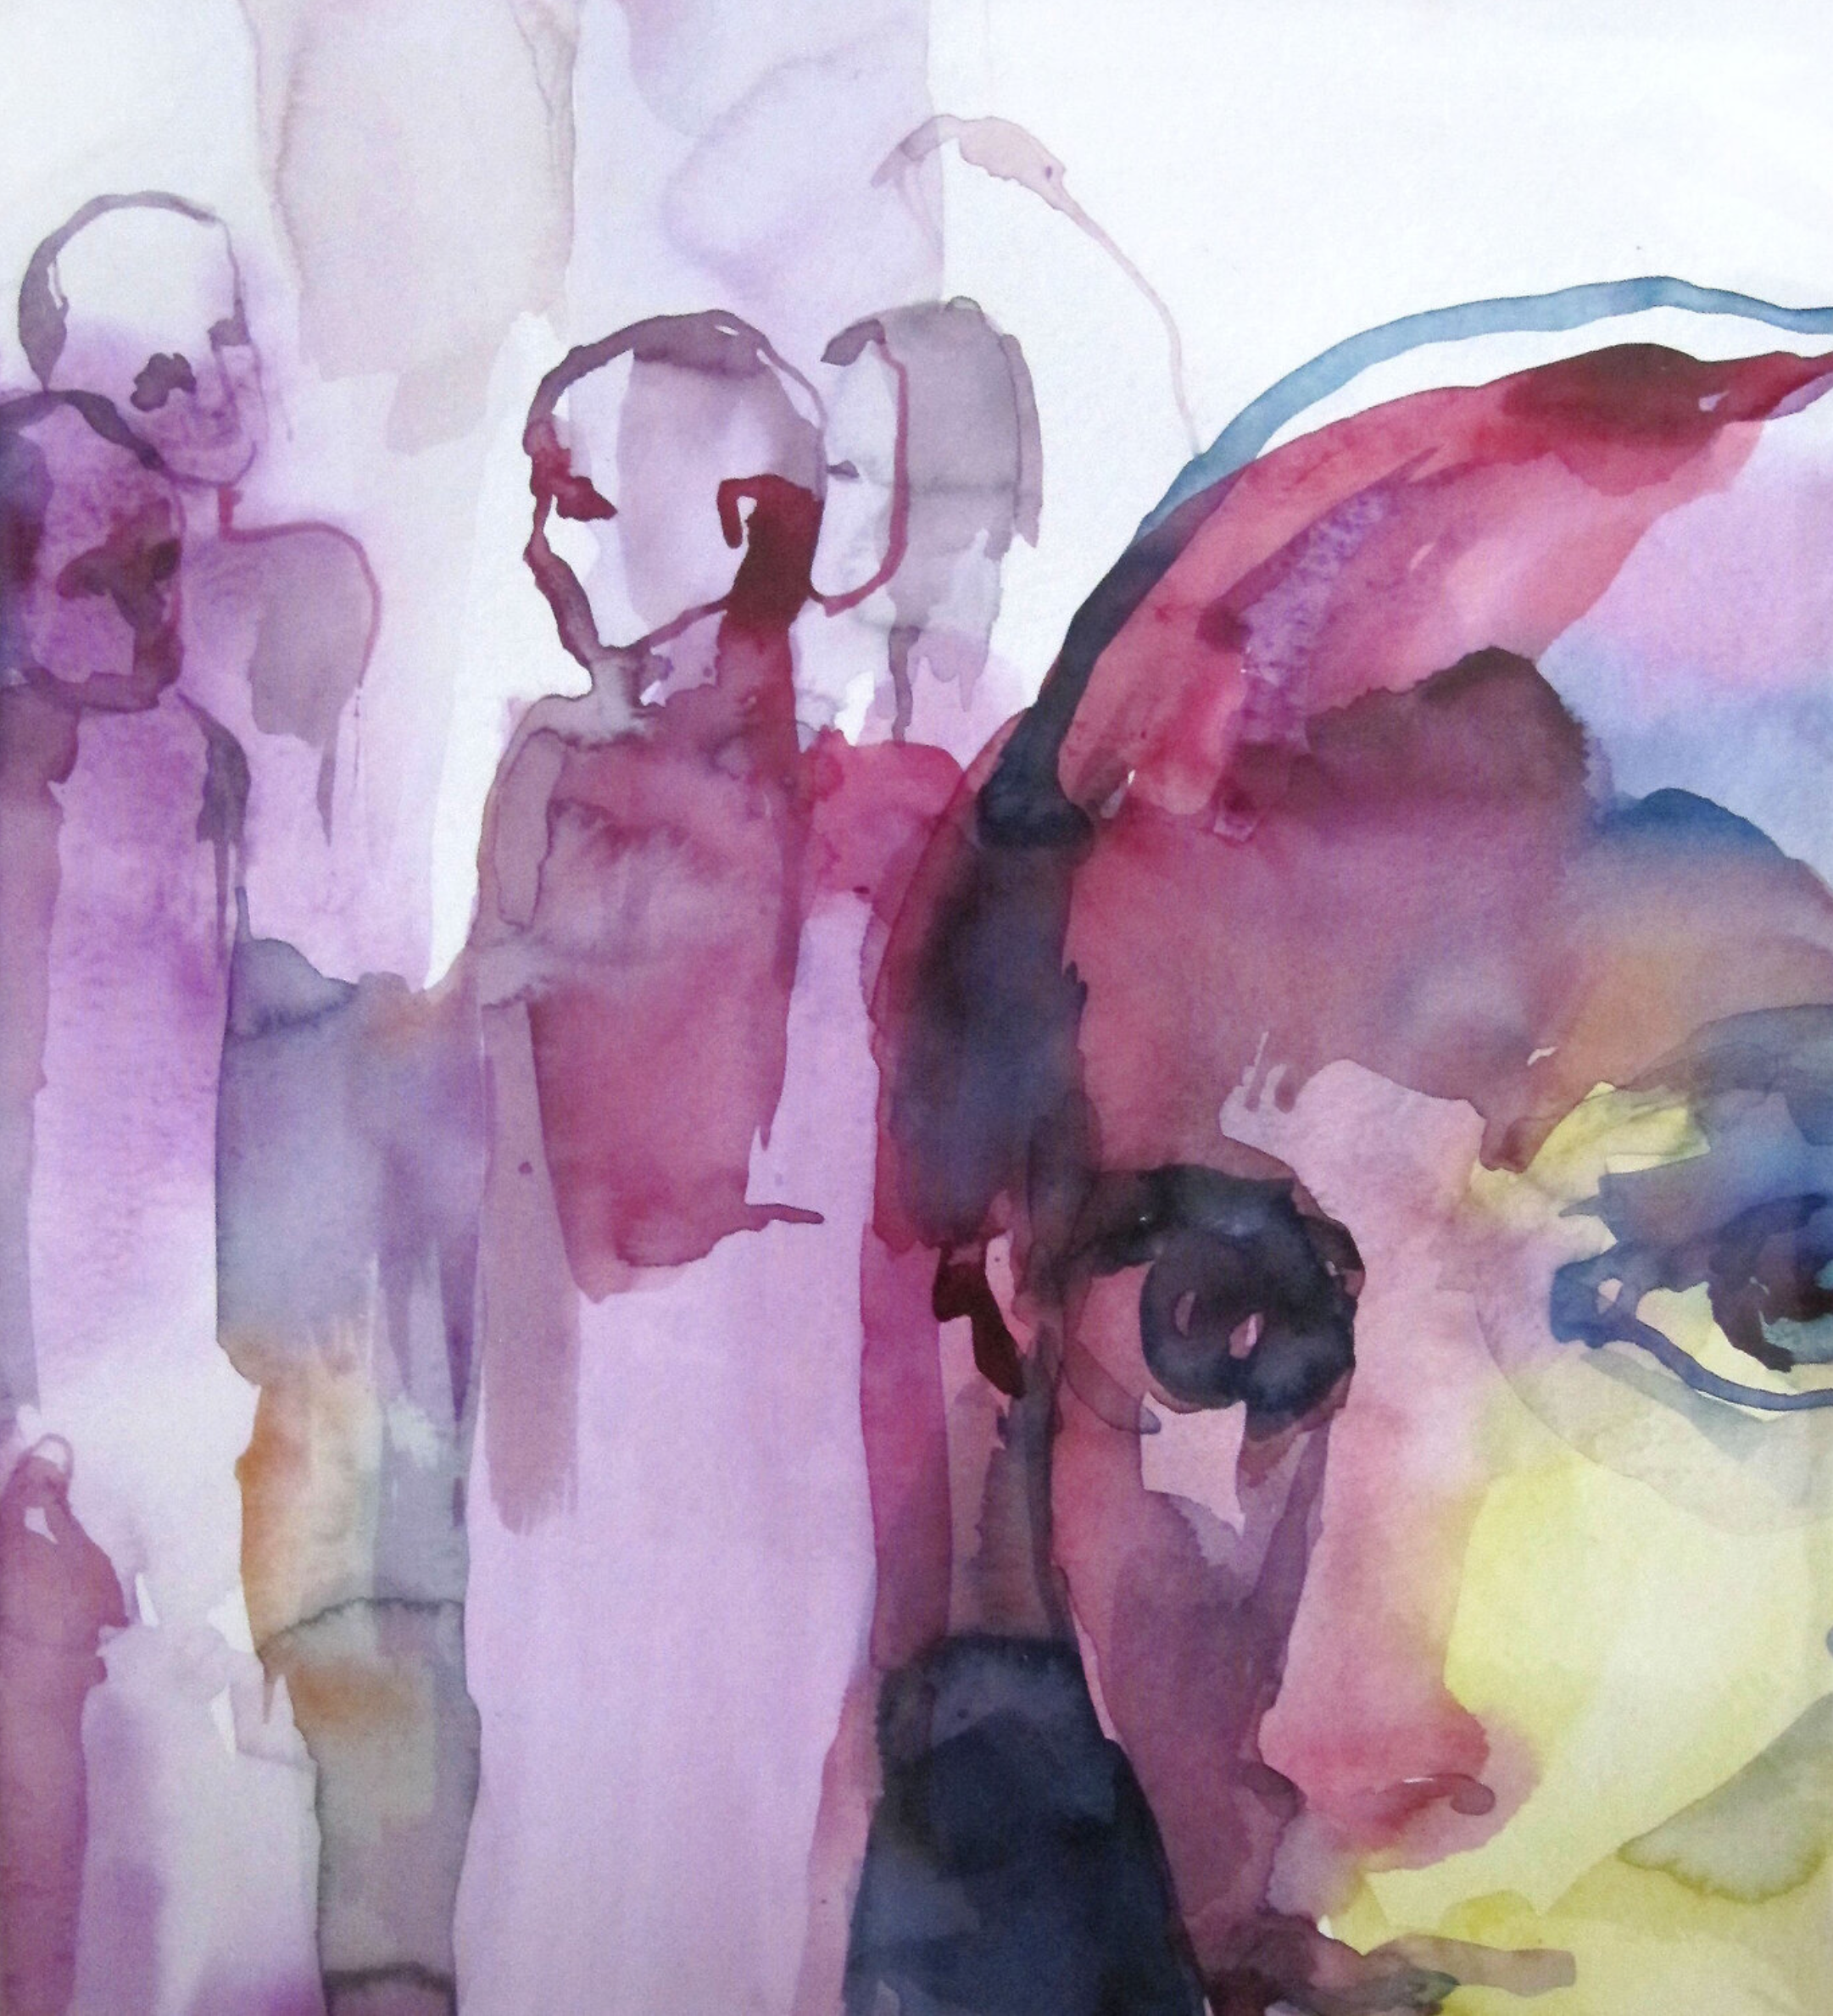 El cuadro "Complot" de Sylvia Baldeva muestra una escena de la vida, figuras, rostro en primer plano, retrato, siluetas. Colores predominantemente violetas.